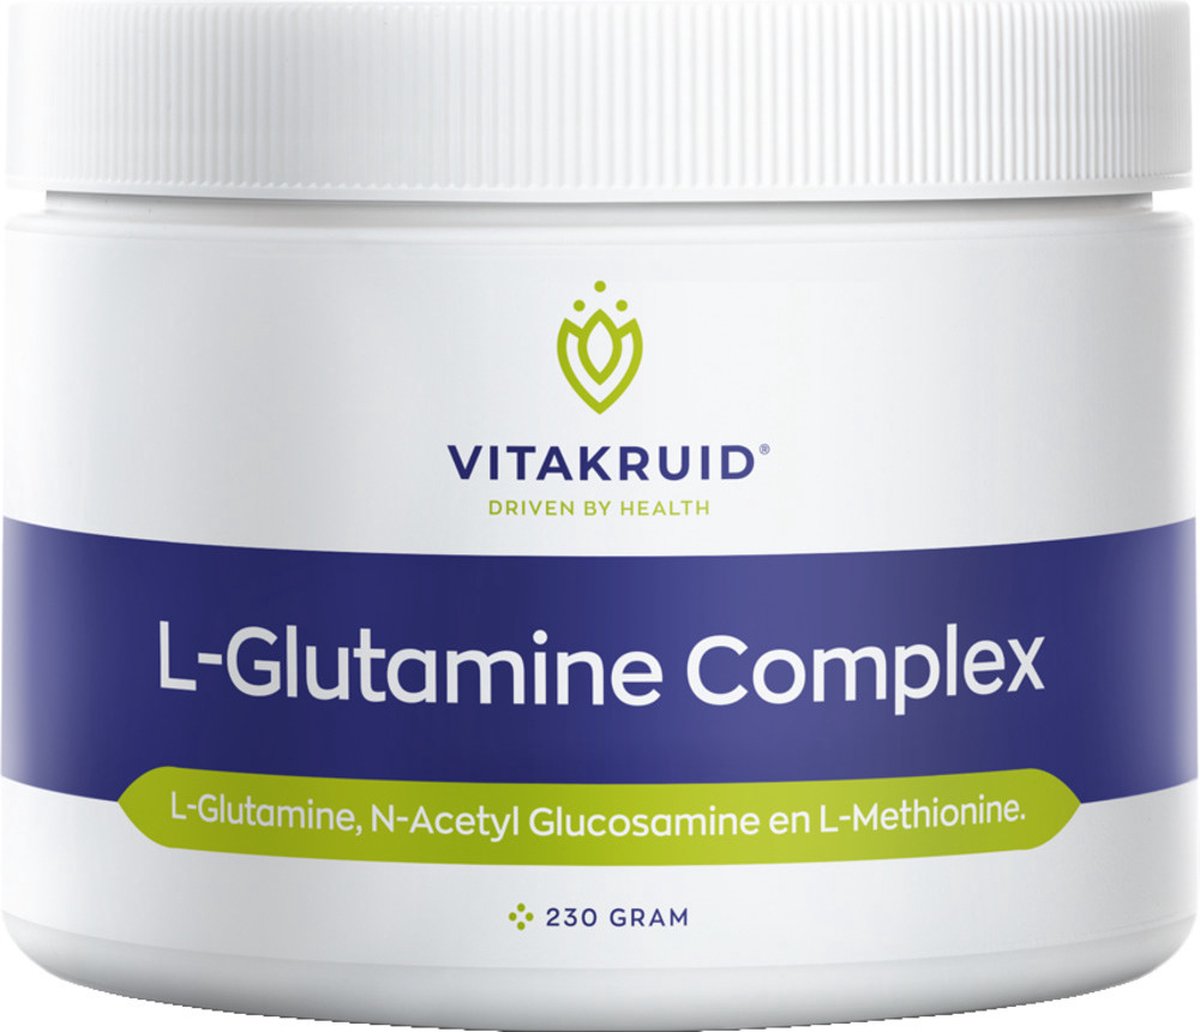 Vitakruid L-Glutamine complex 230 gram - Vitakruid